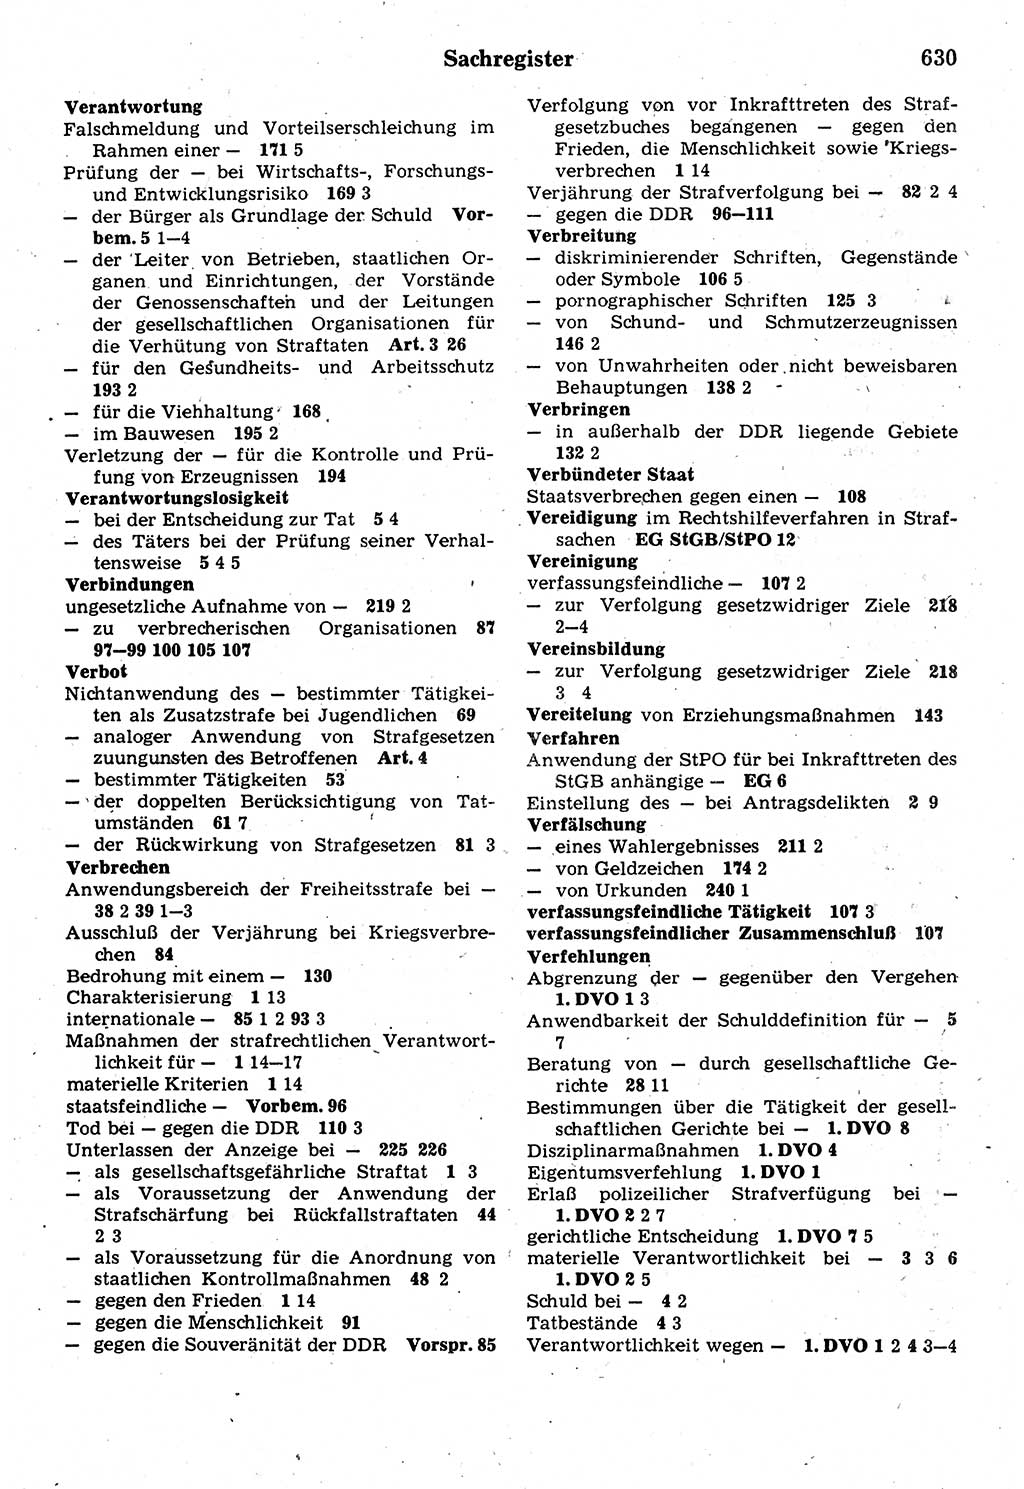 Strafrecht der Deutschen Demokratischen Republik (DDR), Kommentar zum Strafgesetzbuch (StGB) 1987, Seite 630 (Strafr. DDR Komm. StGB 1987, S. 630)